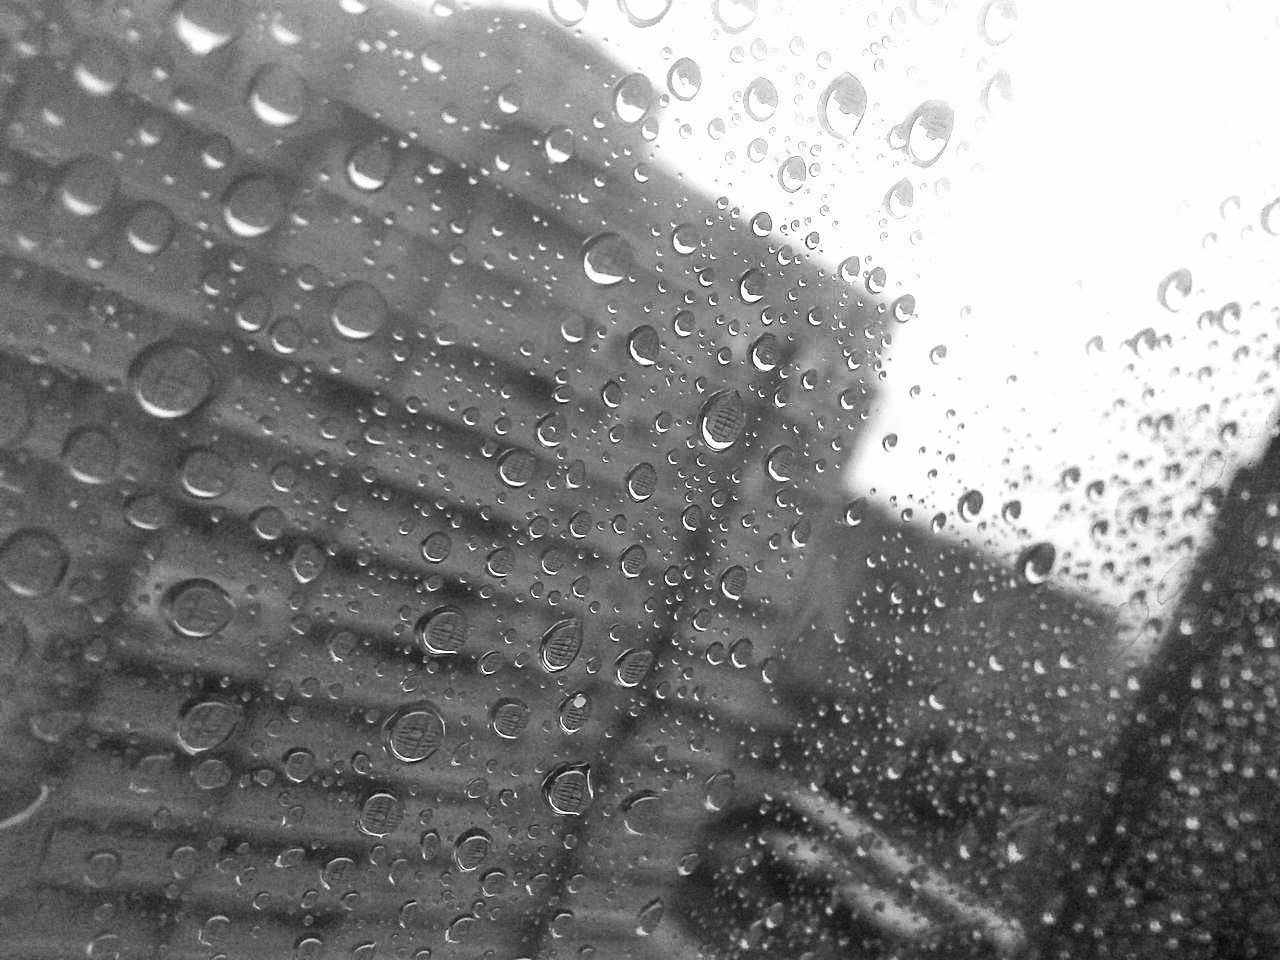 Капли дождя стучат. Дождь фото. Капли застучали. Картинки дождь на стекле грусть. Стук капель дождя.